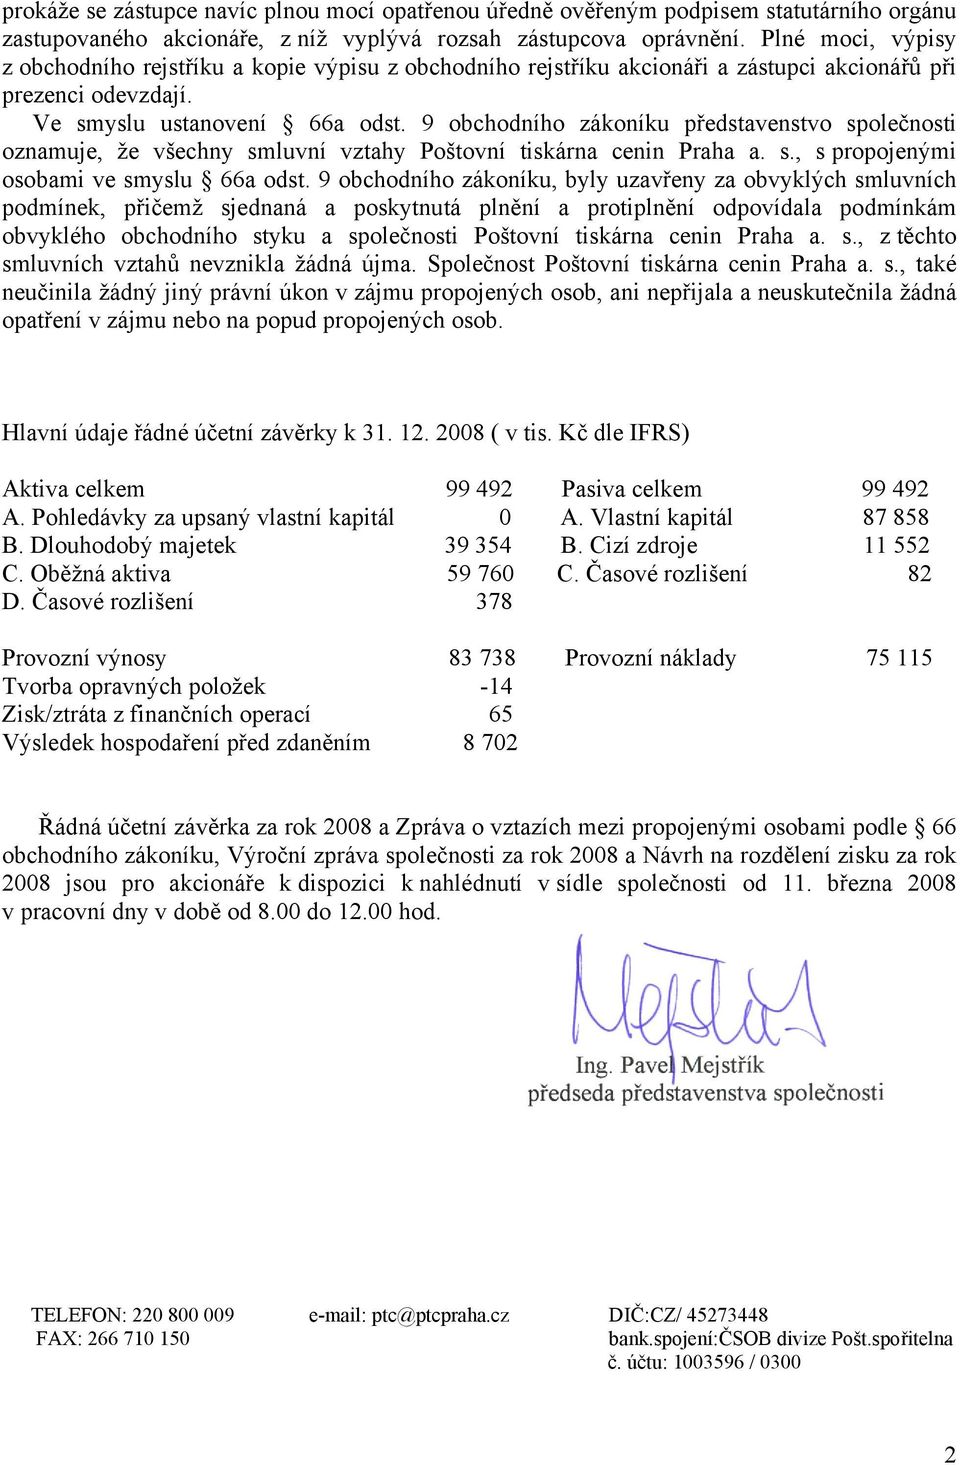 9 obchodního zákoníku představenstvo společnosti oznamuje, že všechny smluvní vztahy Poštovní tiskárna cenin Praha a. s., s propojenými osobami ve smyslu 66a odst.